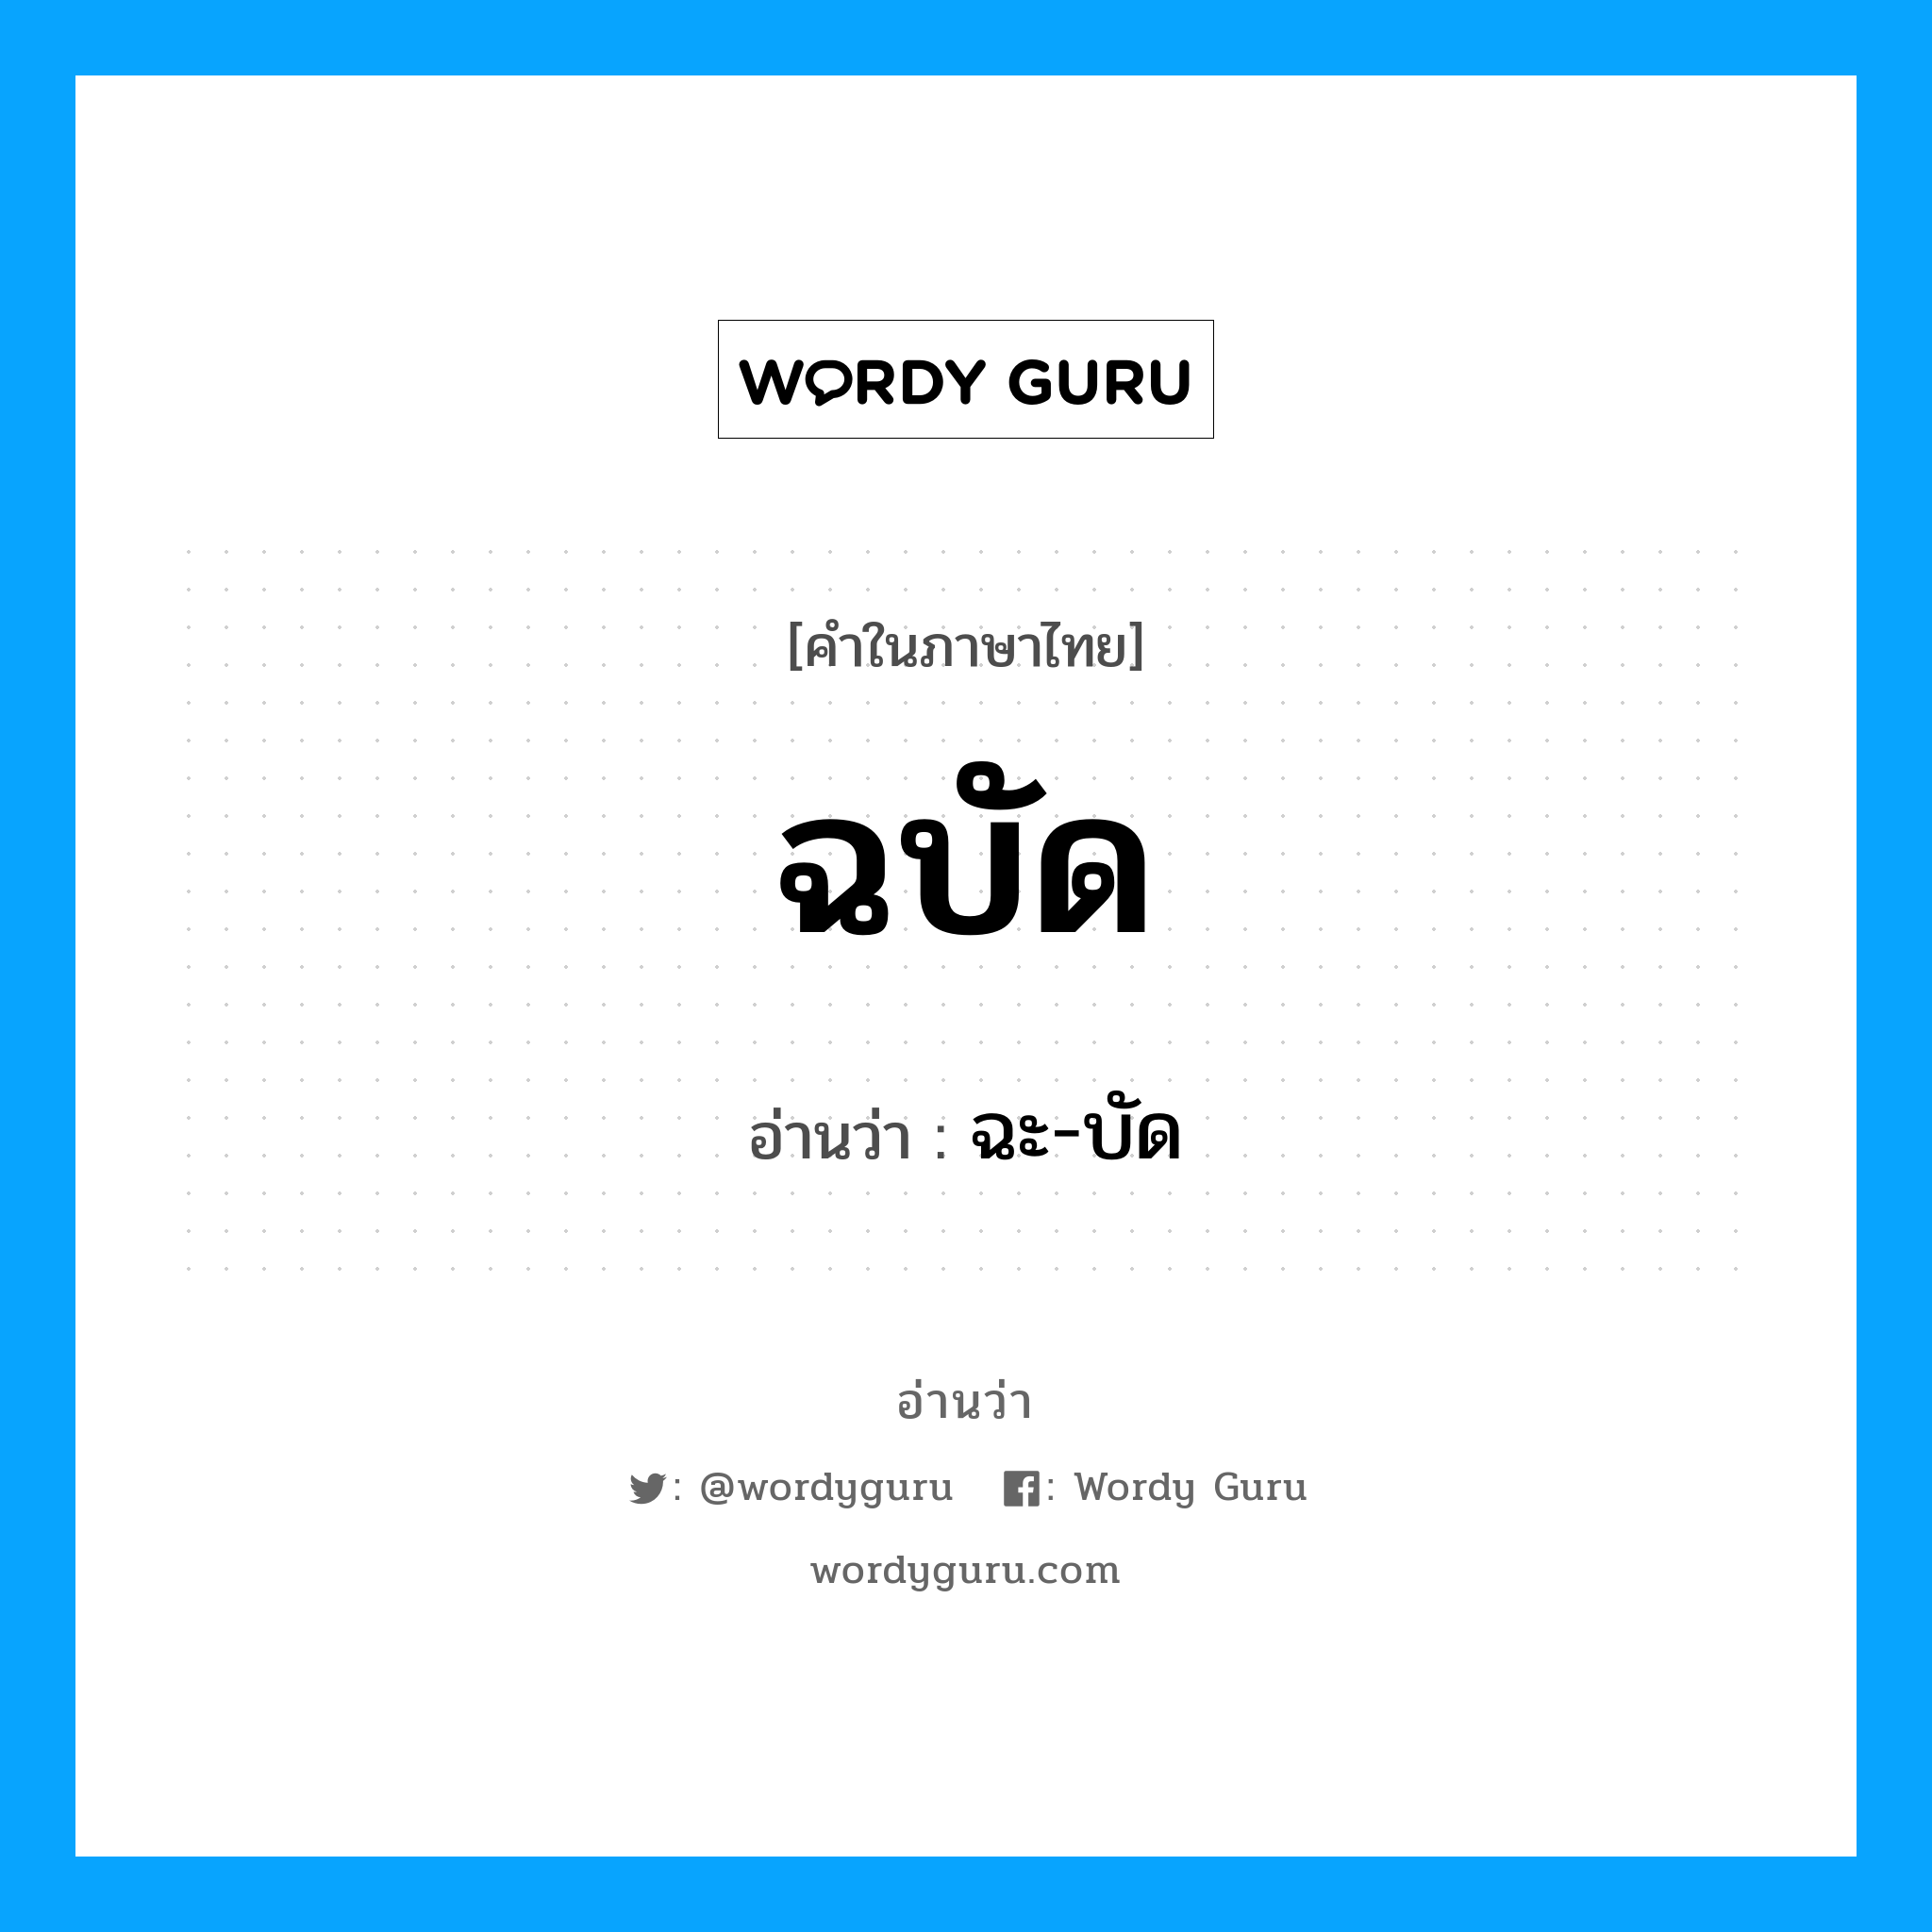 ฉะ-บัด เป็นคำอ่านของคำไหน?, คำในภาษาไทย ฉะ-บัด อ่านว่า ฉบัด